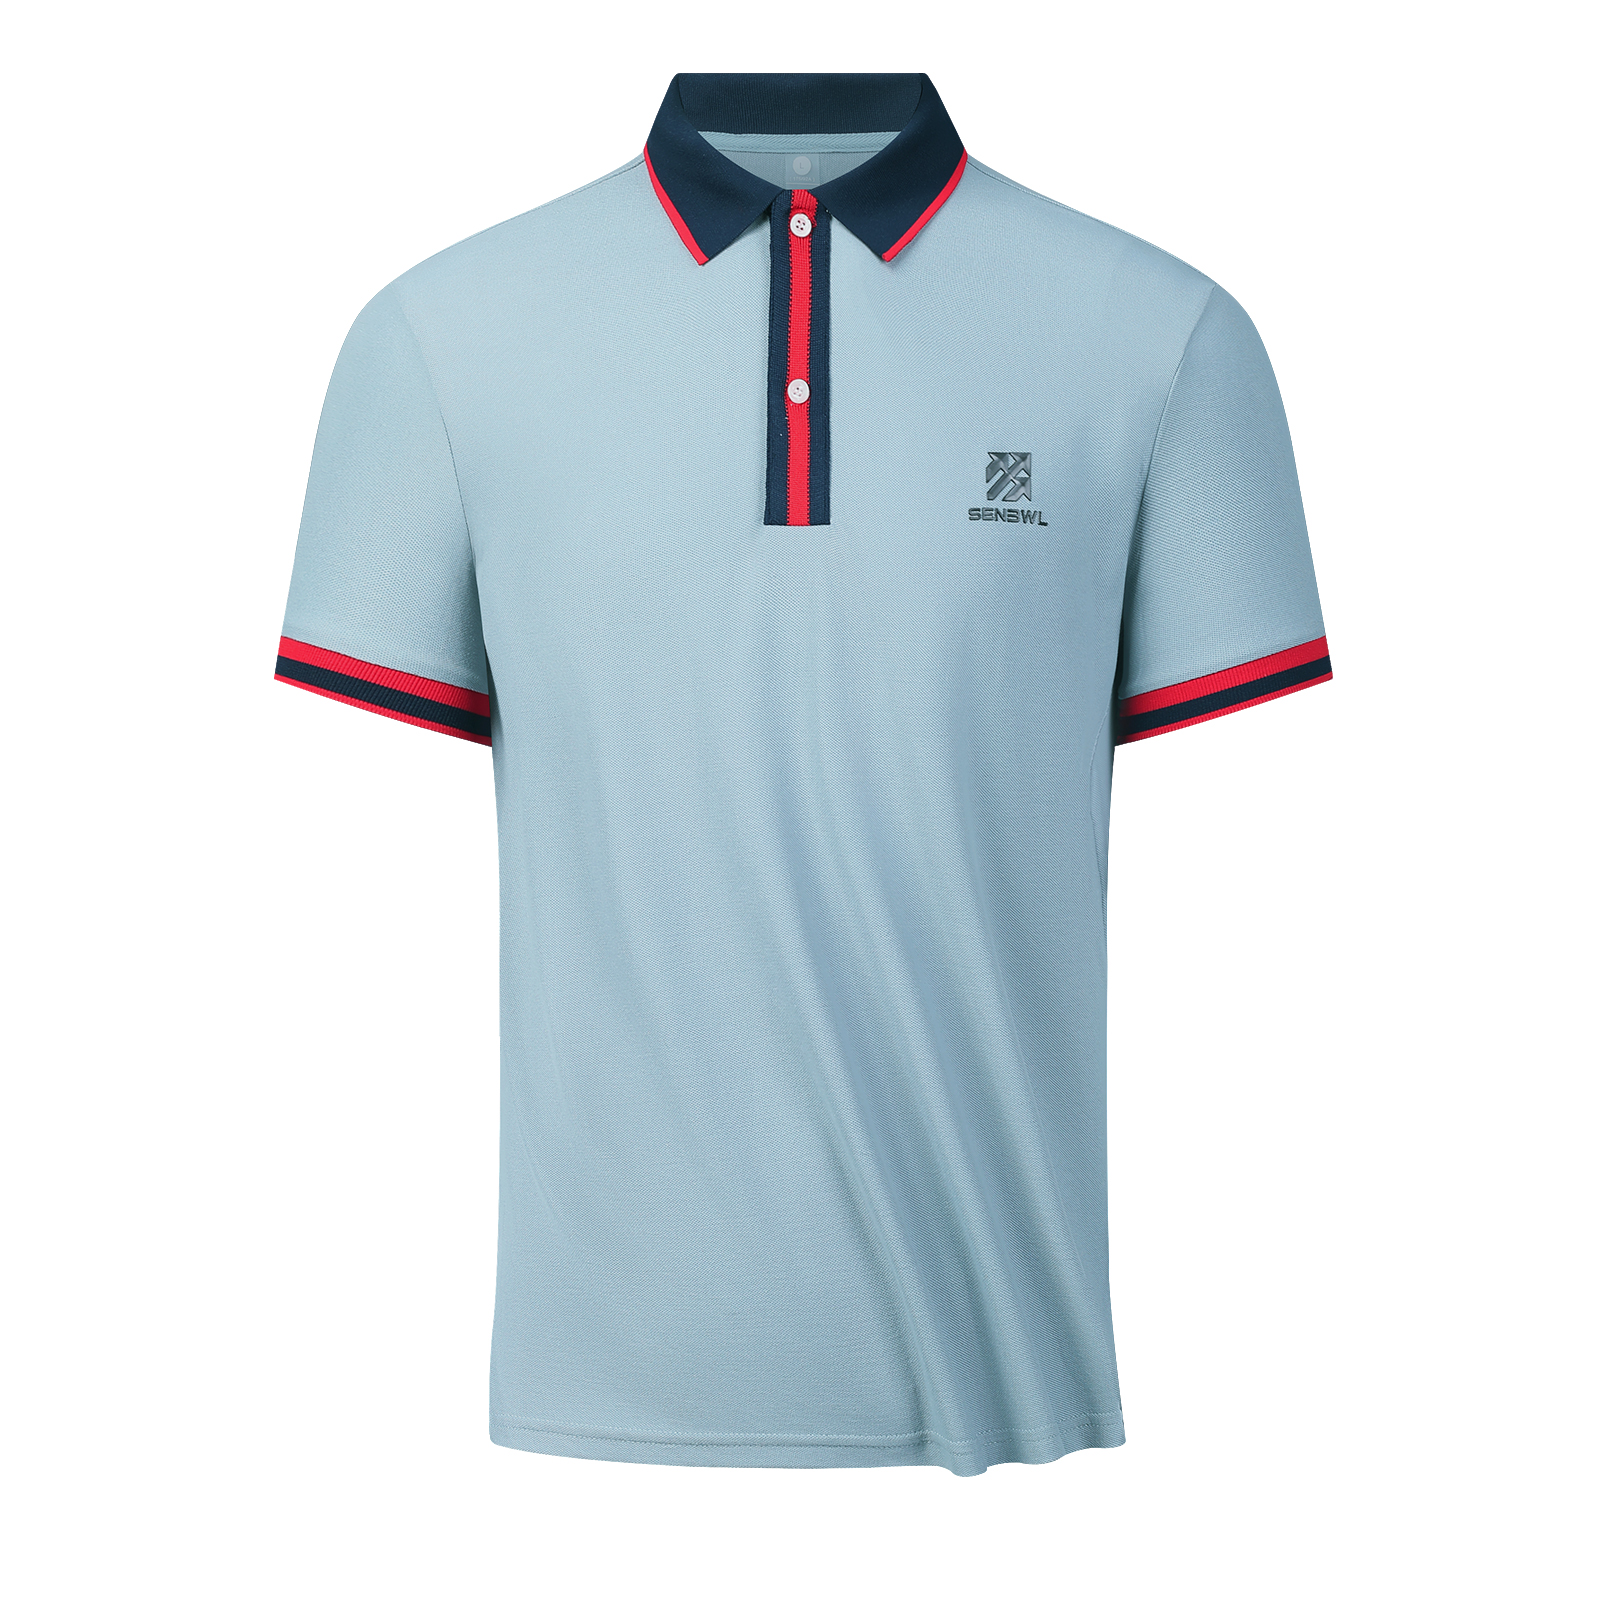 Senbwl Men's CVC Pique Cotton Polo Shirts-Senbwl Sports